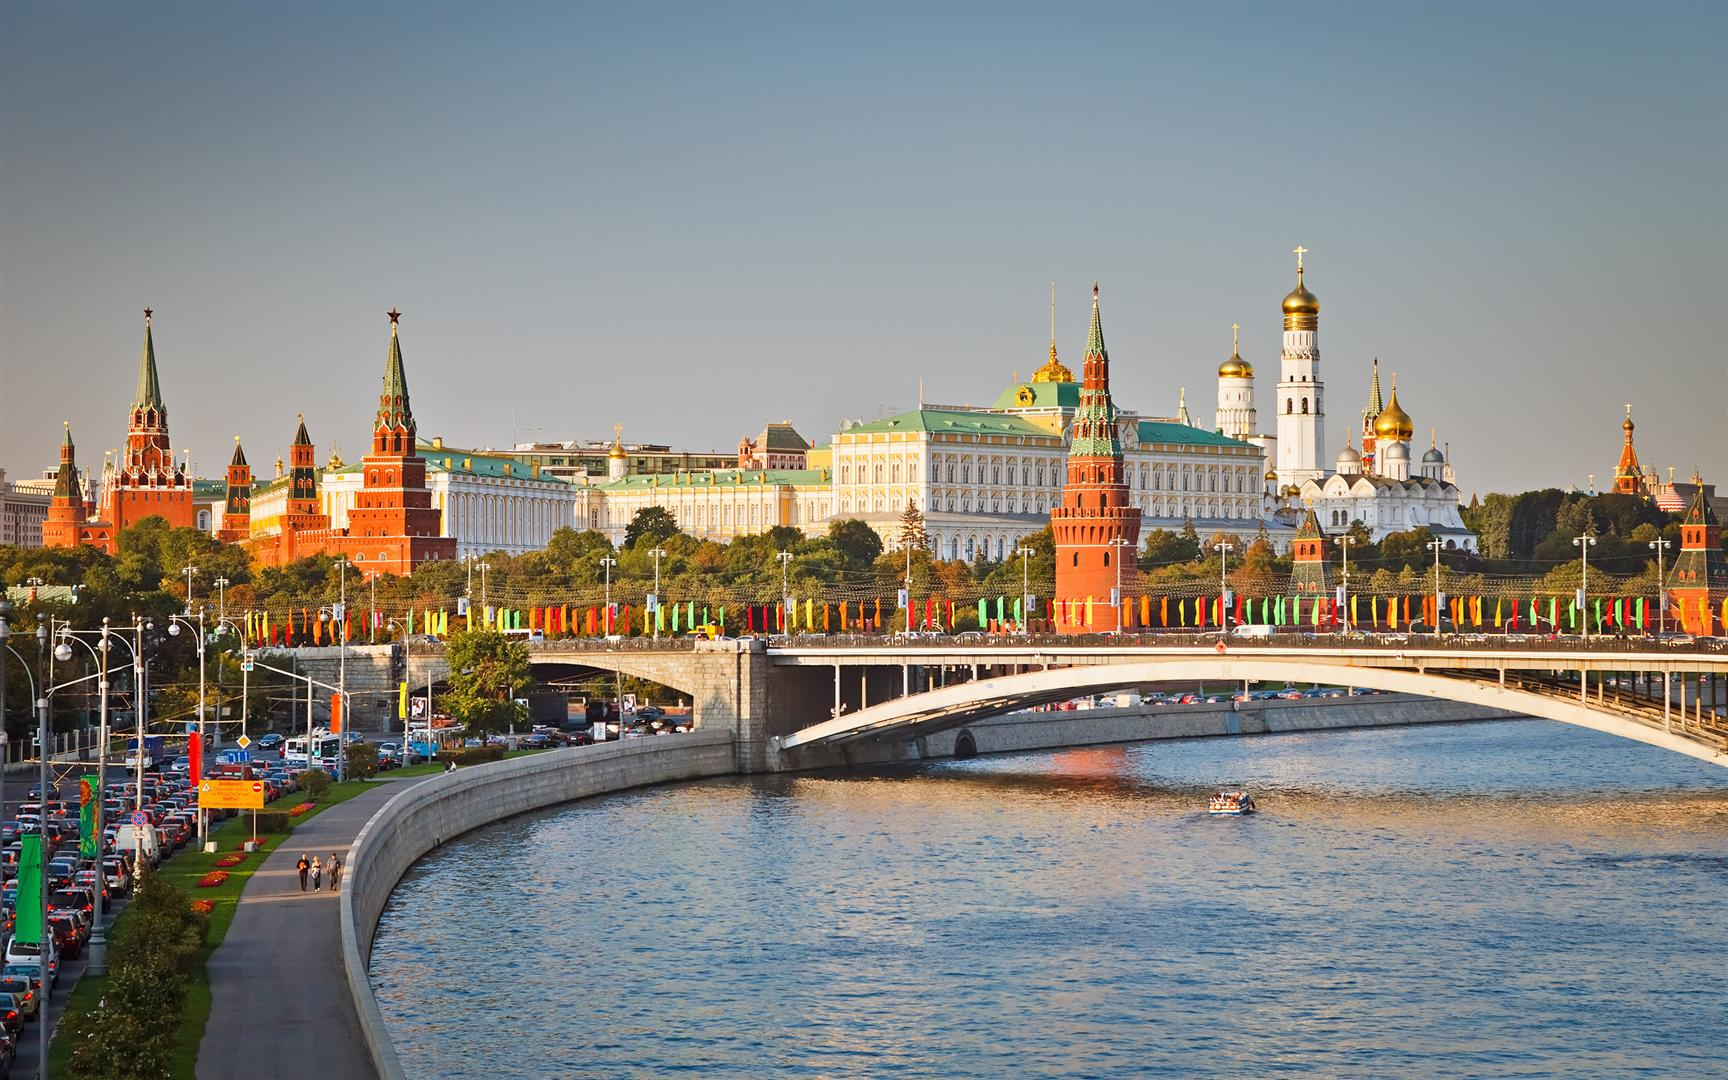 Rusya'da turizmde yeni iflaslar olacak mı?